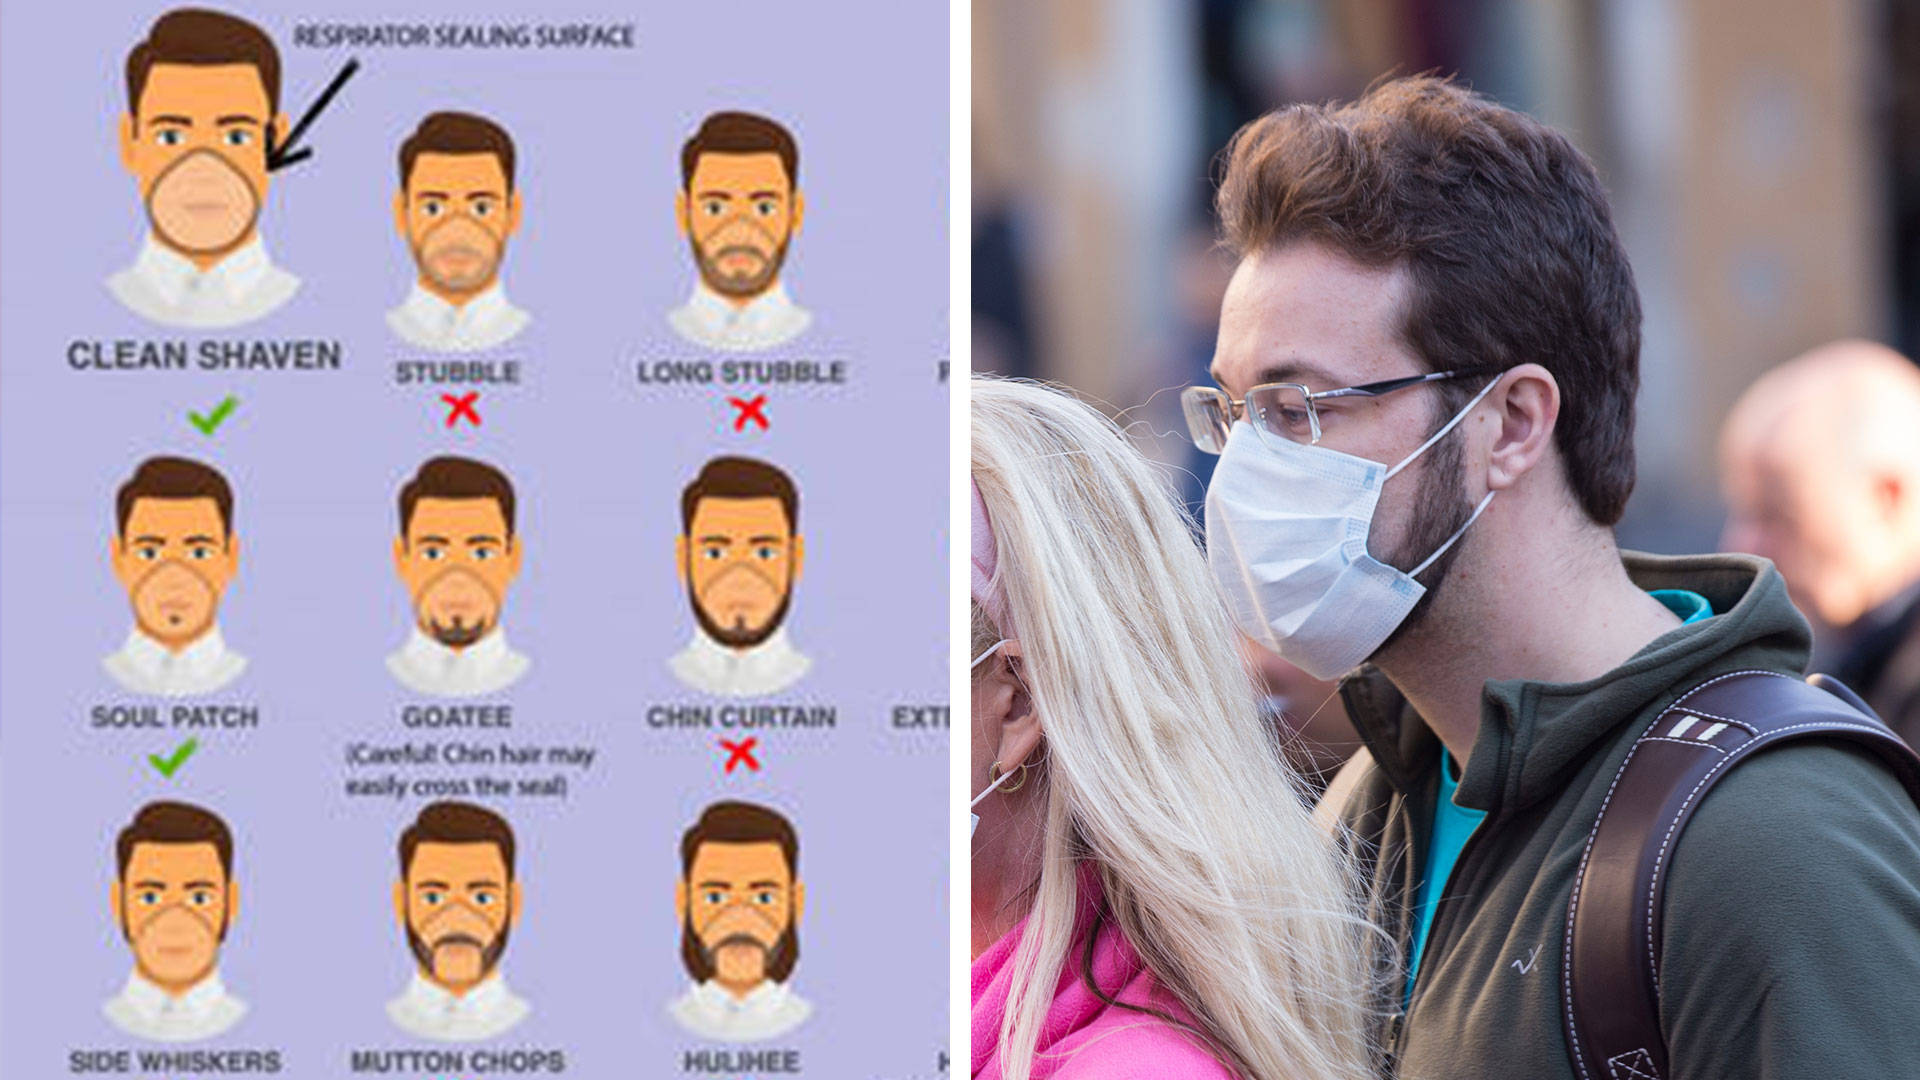 Coronavirus Beard Alert Nhs Warns Over Facial Hair As Chart